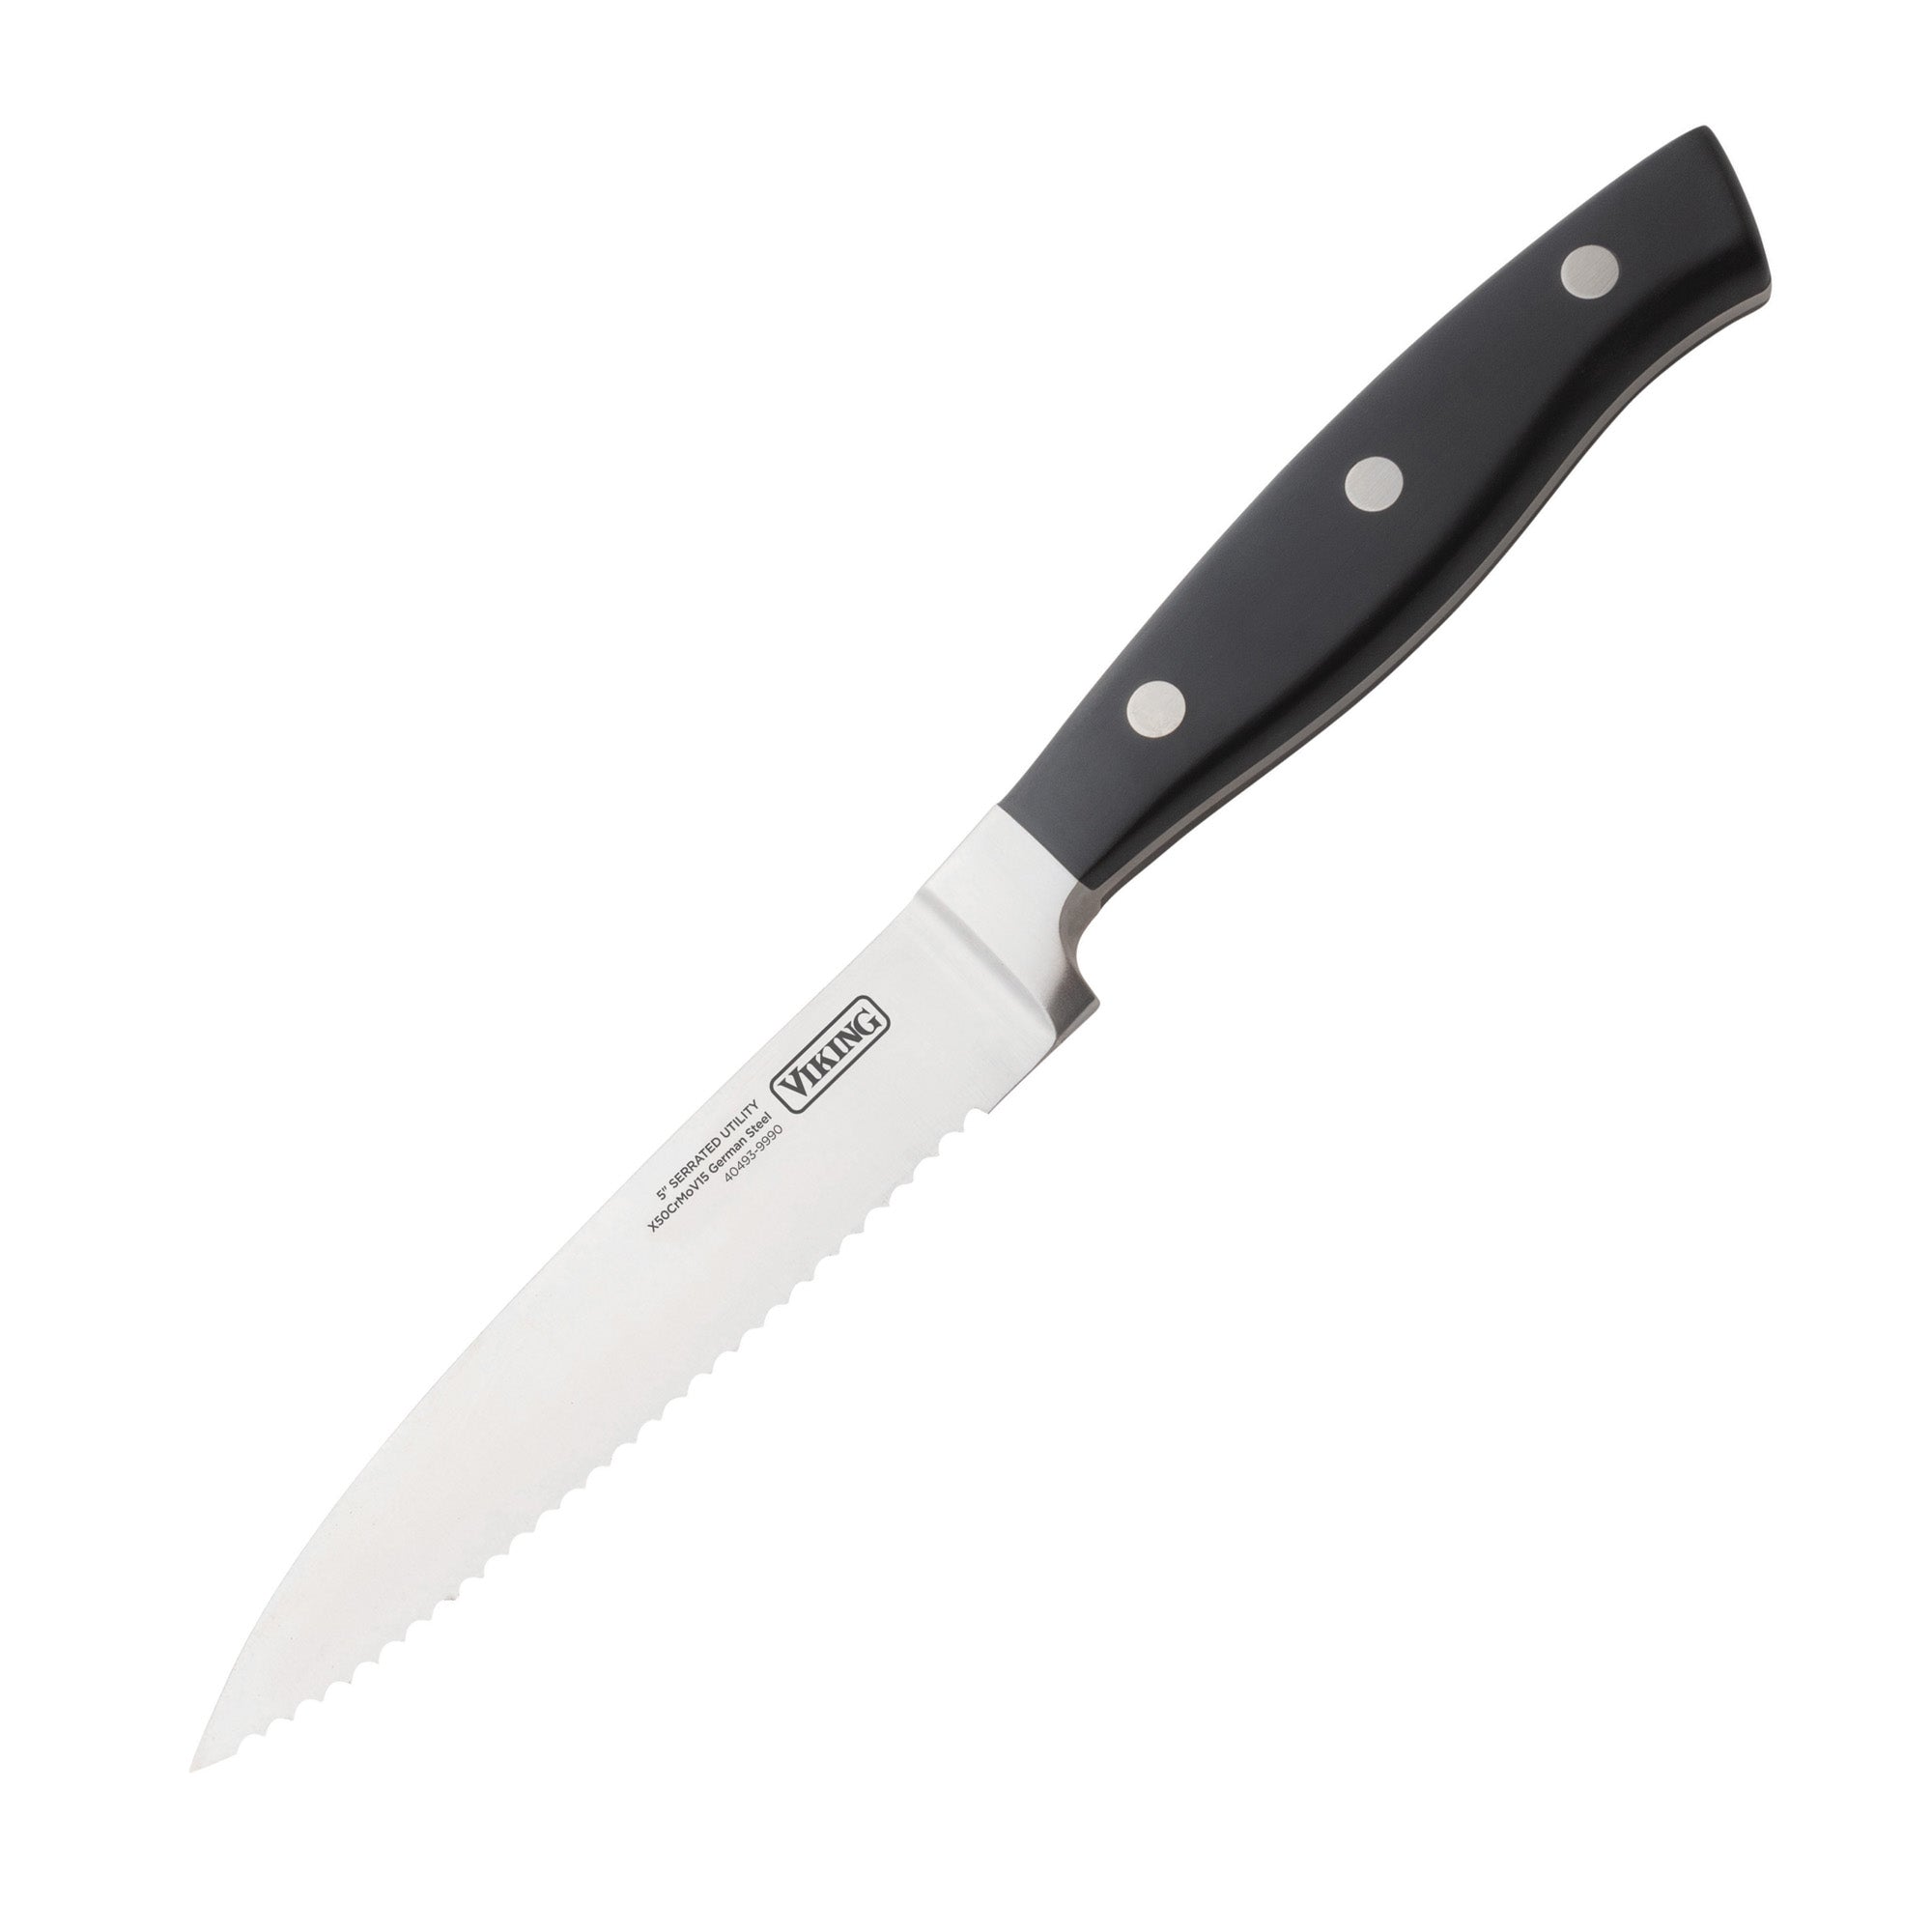 Premium 8 Piece Kitchen Knife Set Black Stainless Steel Serrated